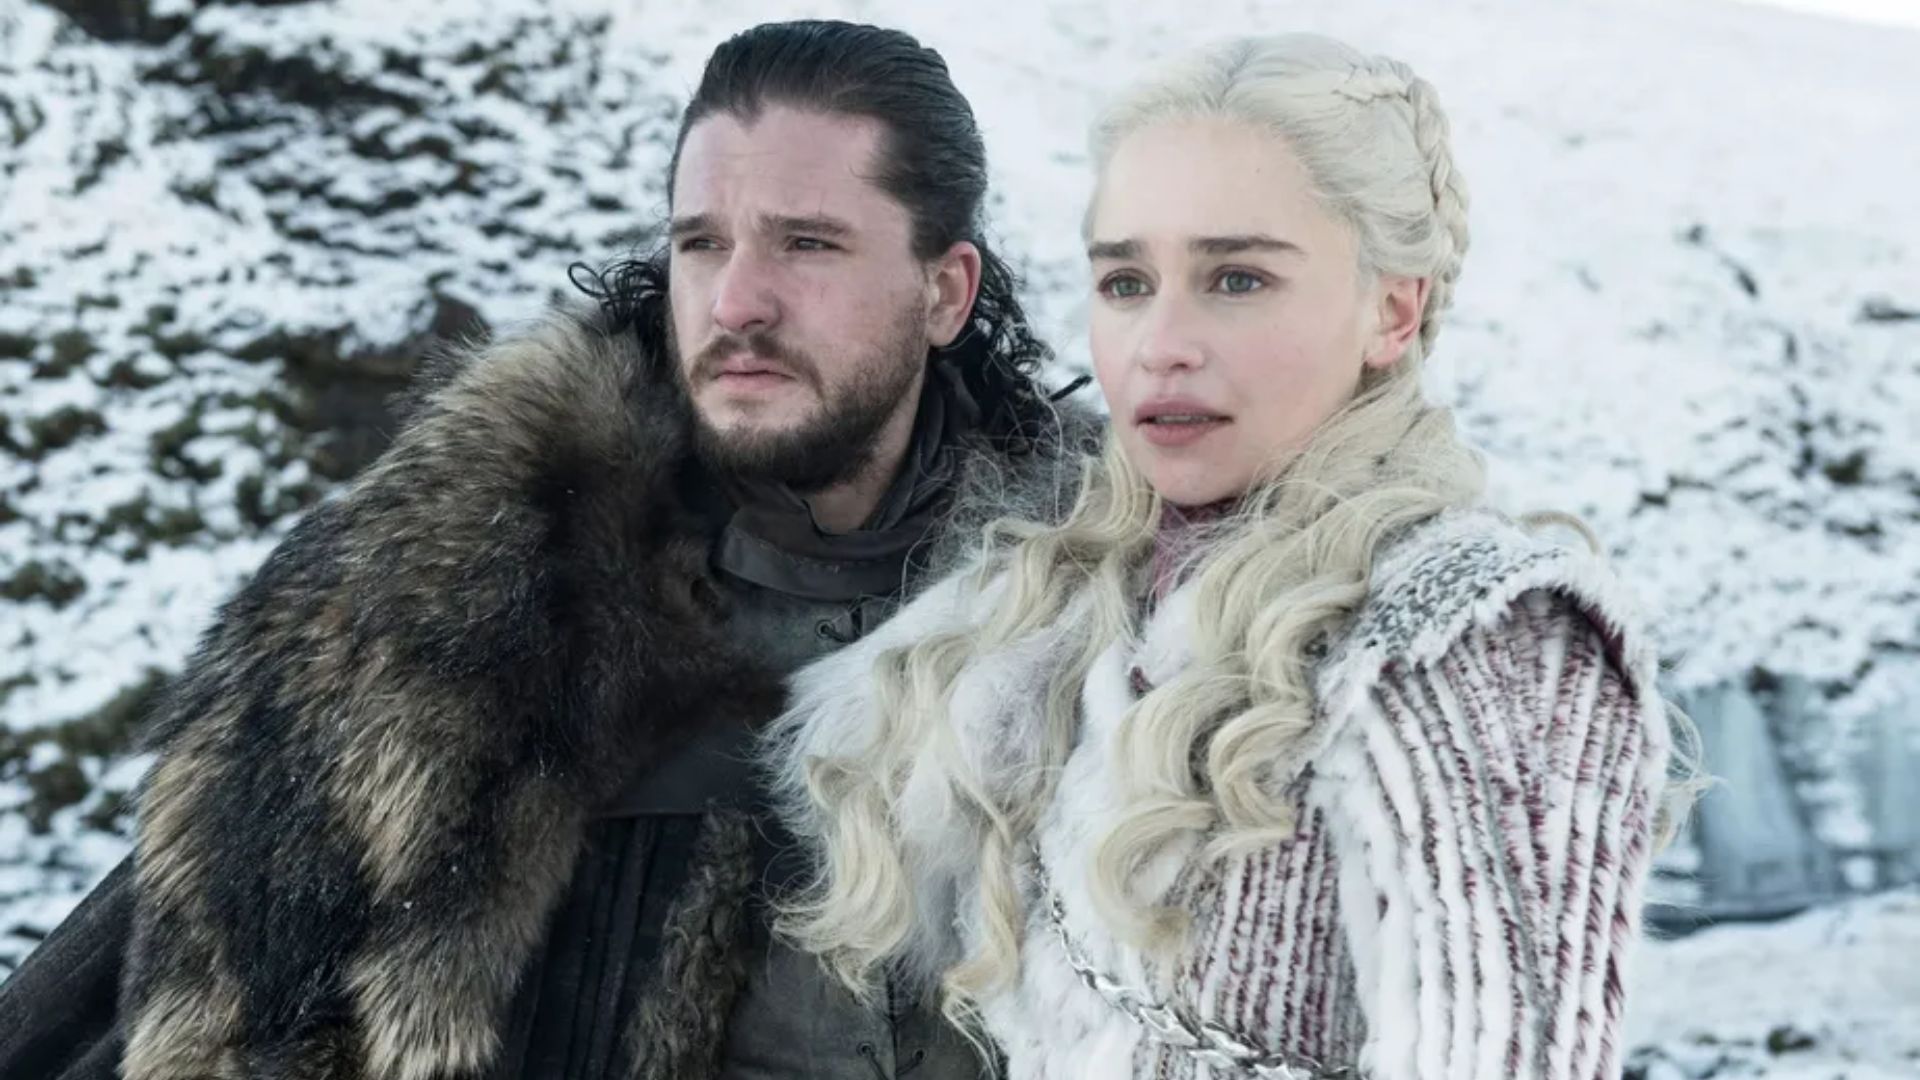 Criadores de Game of Thrones revelam final da série barrado pela HBO